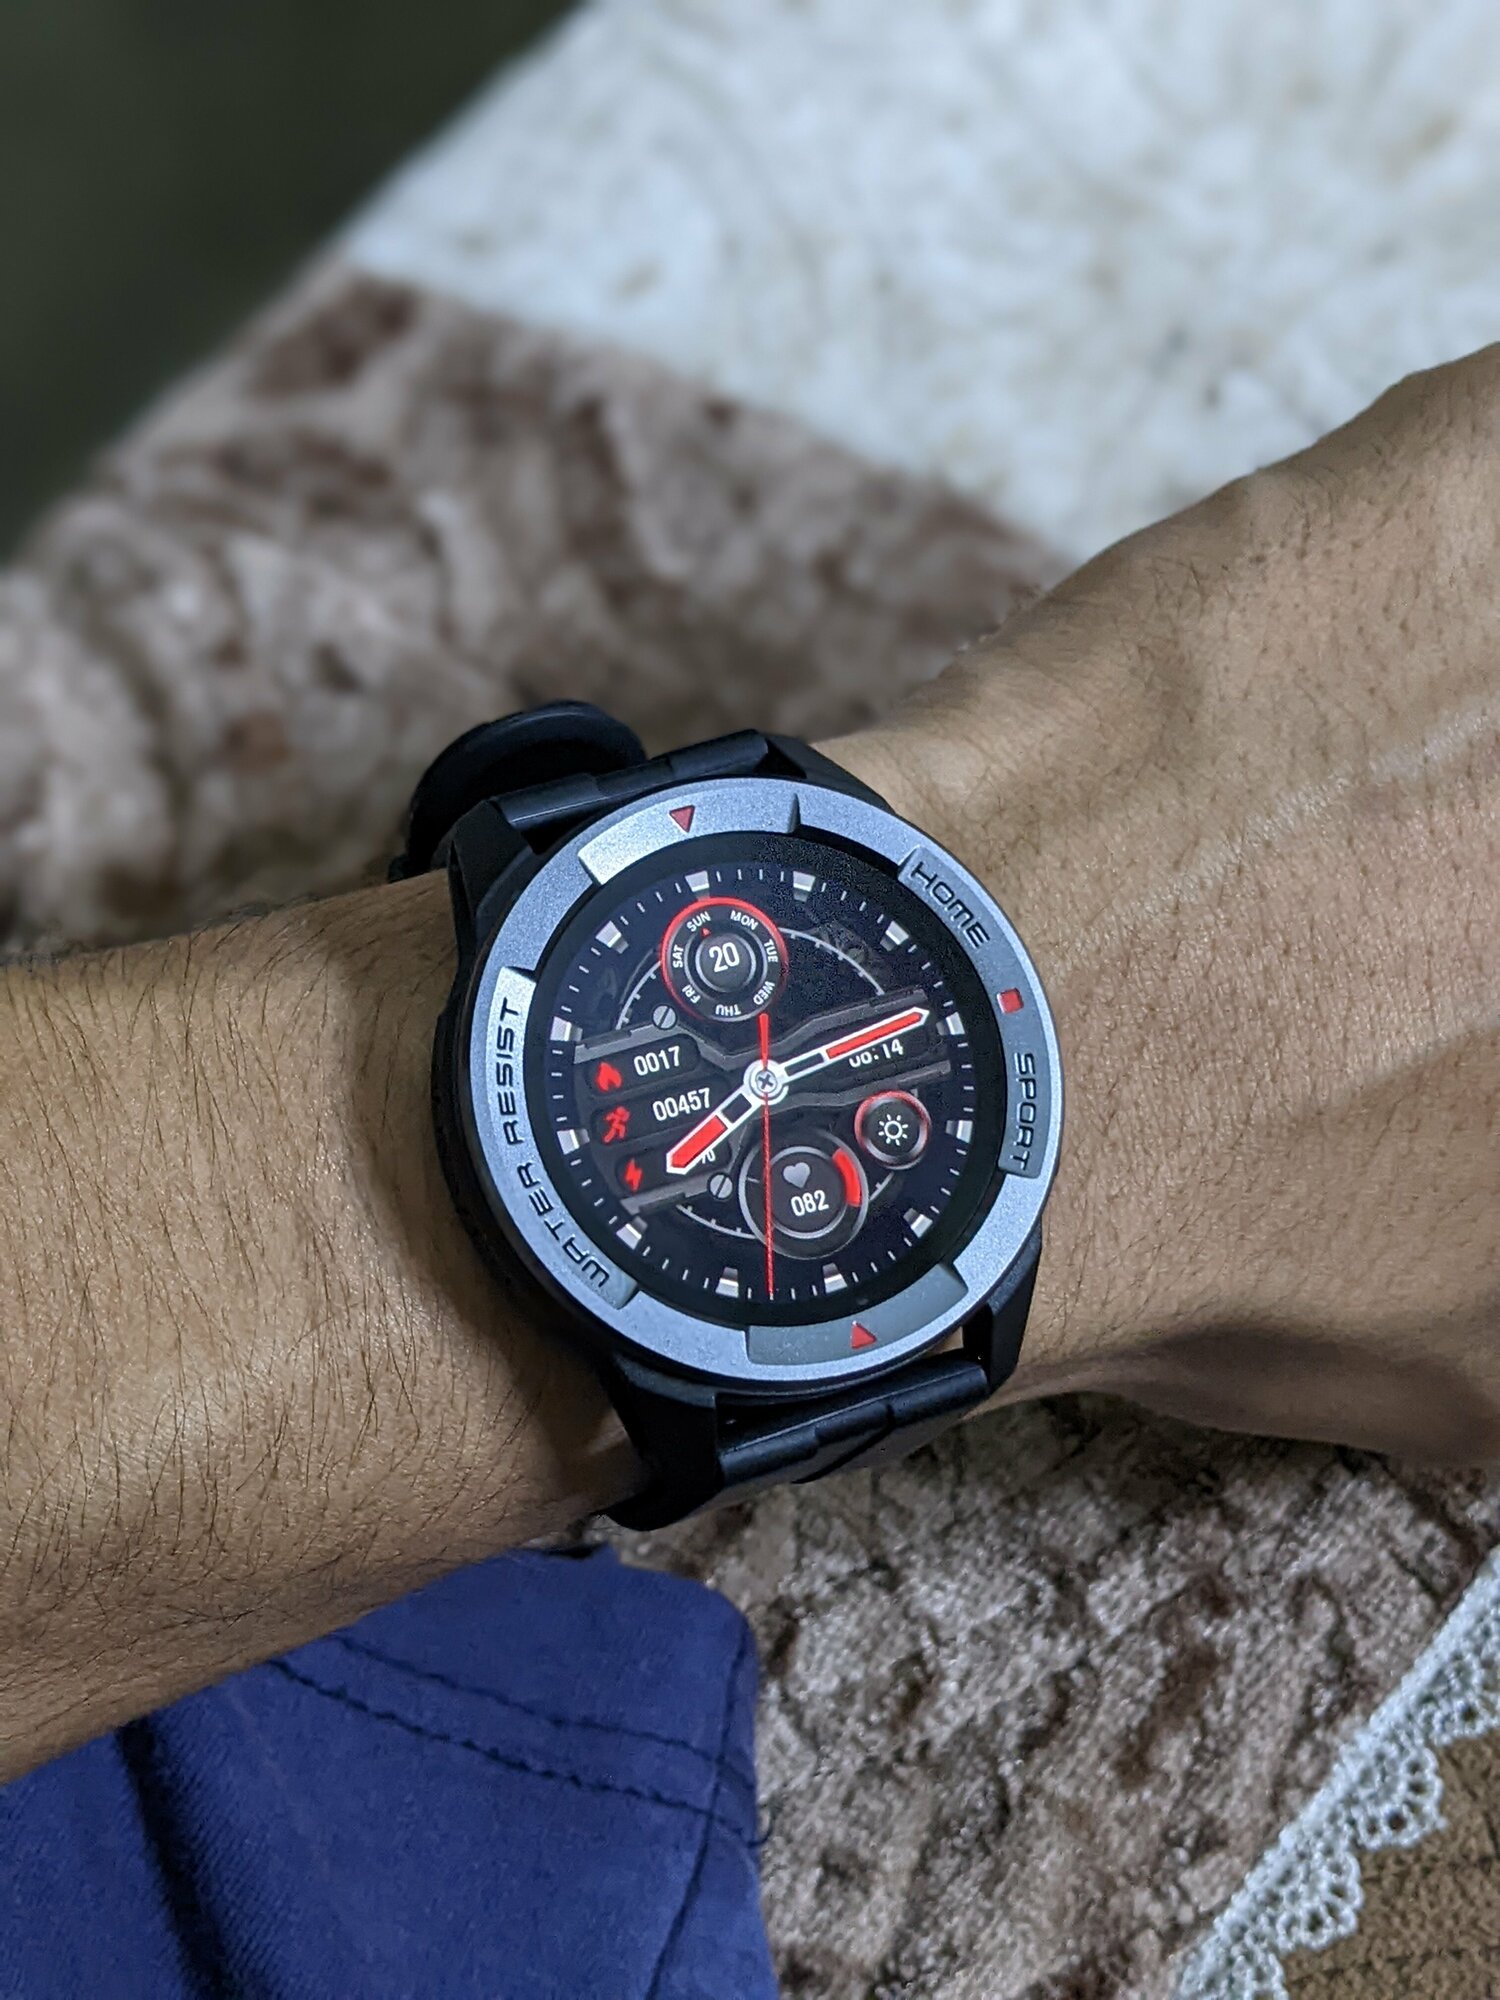 Умные часы mibro Watch X1 47 мм, черный